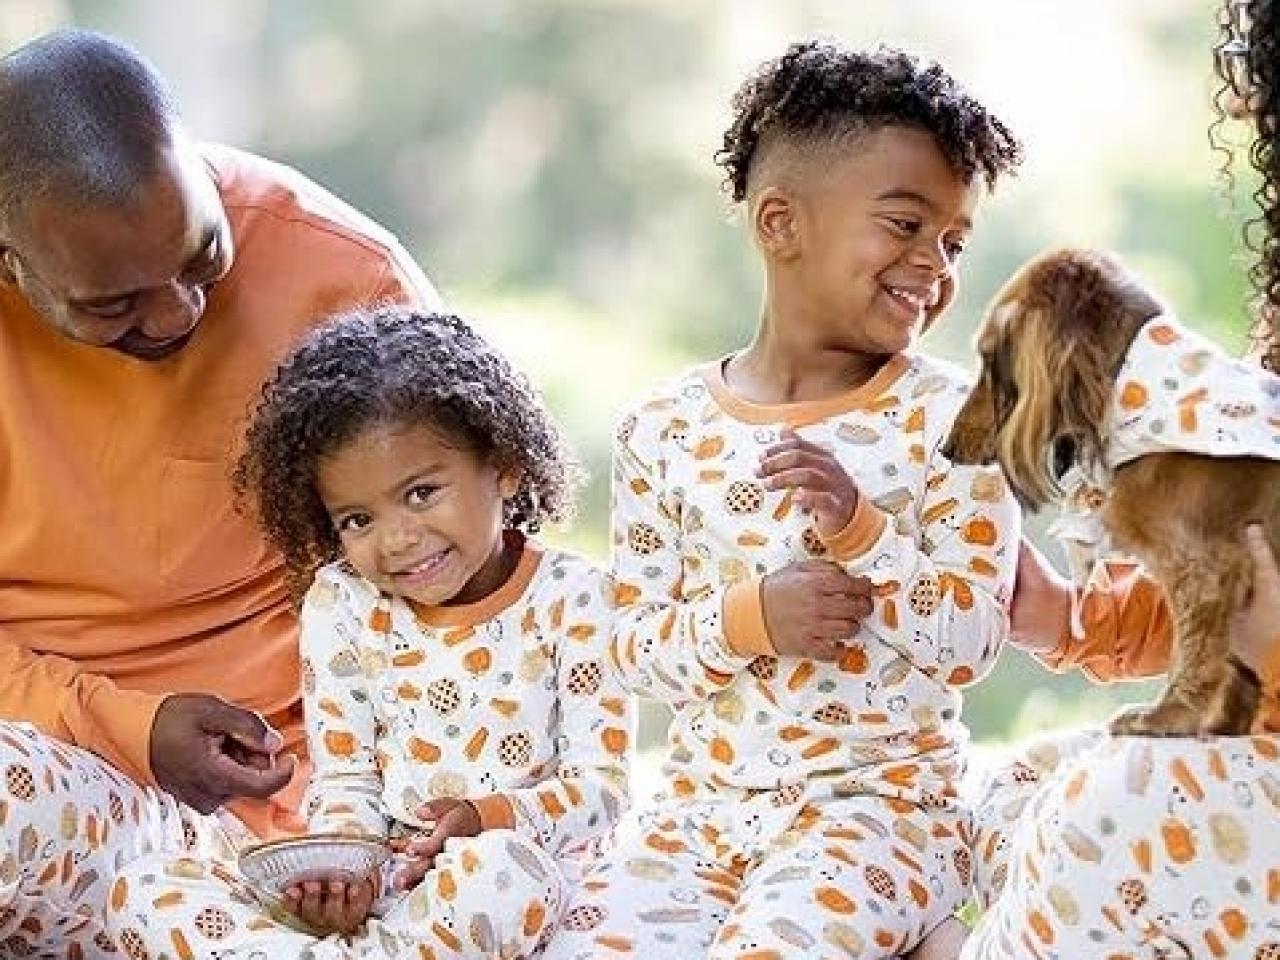 Family Pajamas, Pajamas